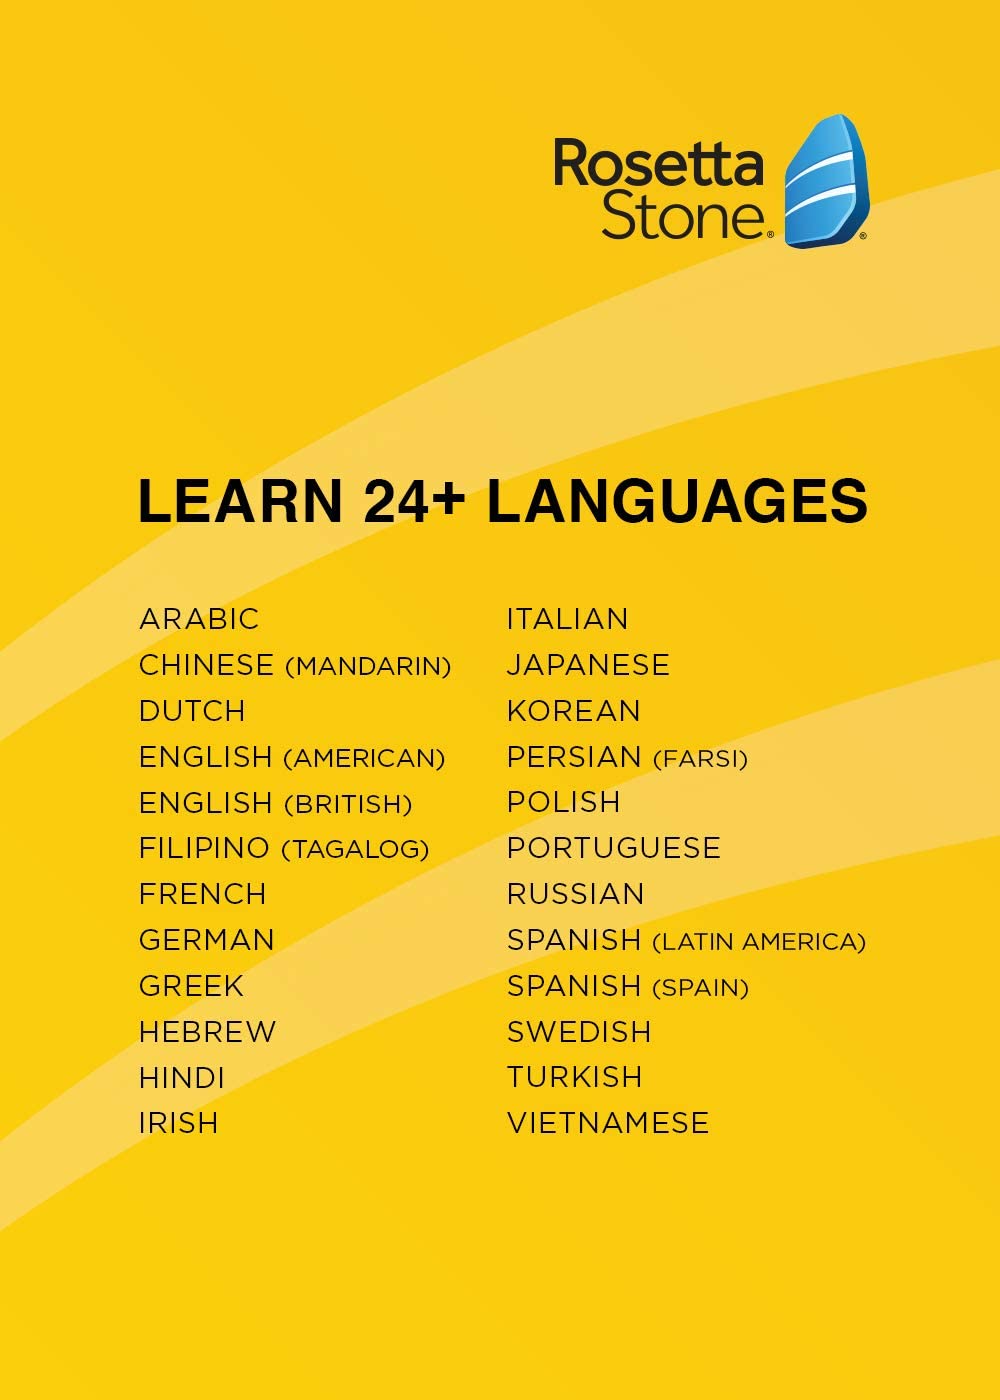 Rosetta Stone: Learn, Practice & Speak Languages